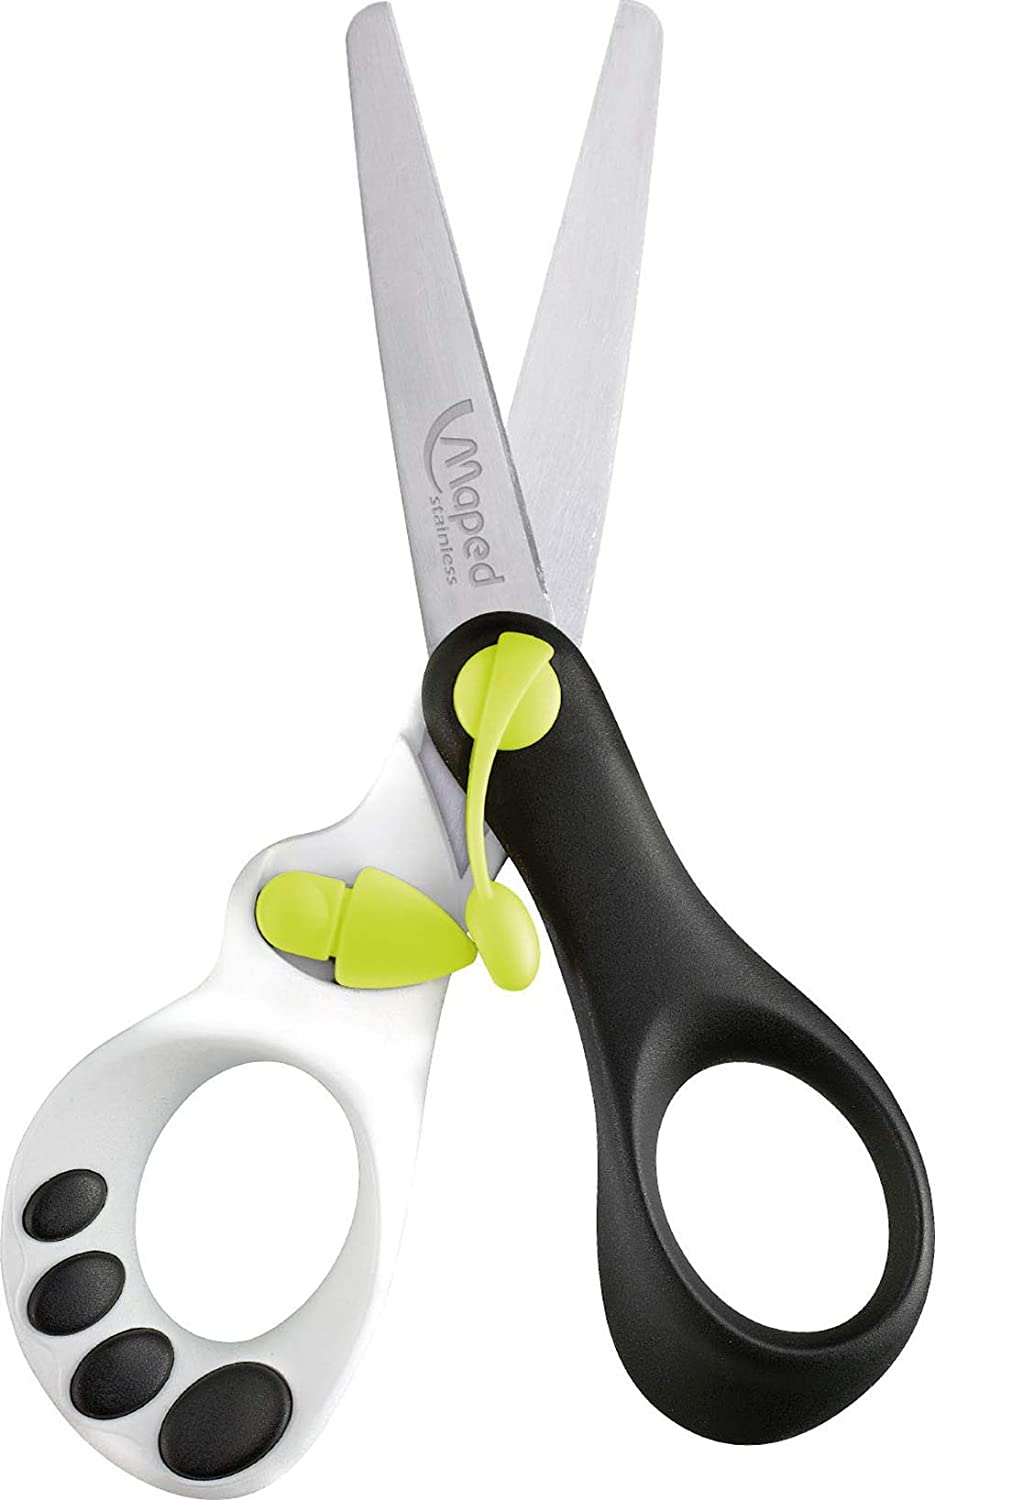 Maped Zenoa Fit Multi-Purpose Scissors